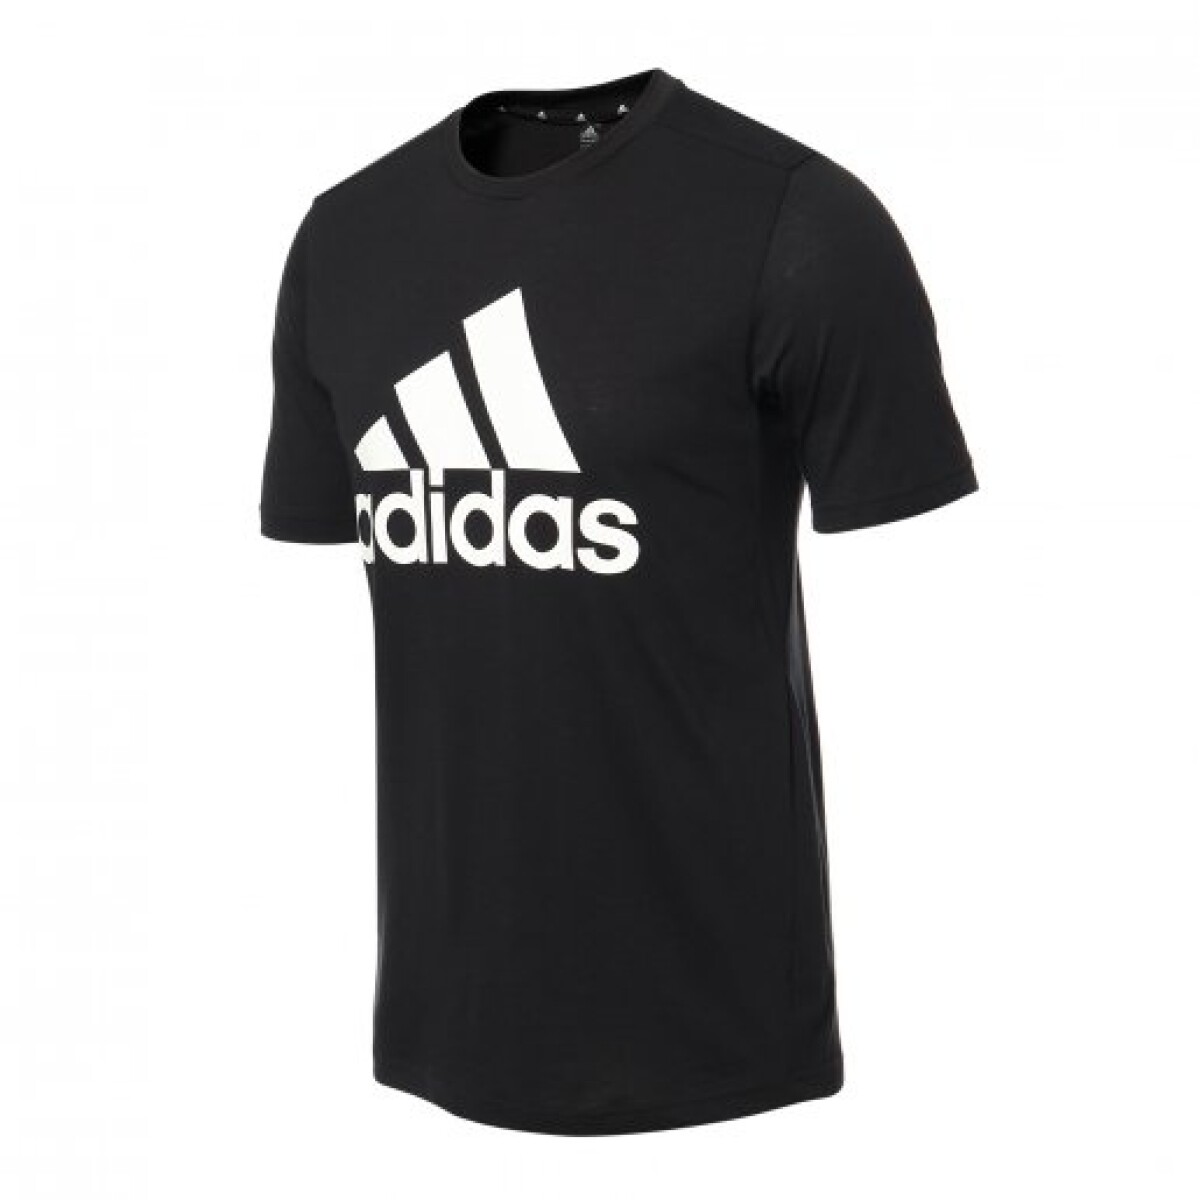 Remera Adidas Moda Hombre logo Negra - S/C 